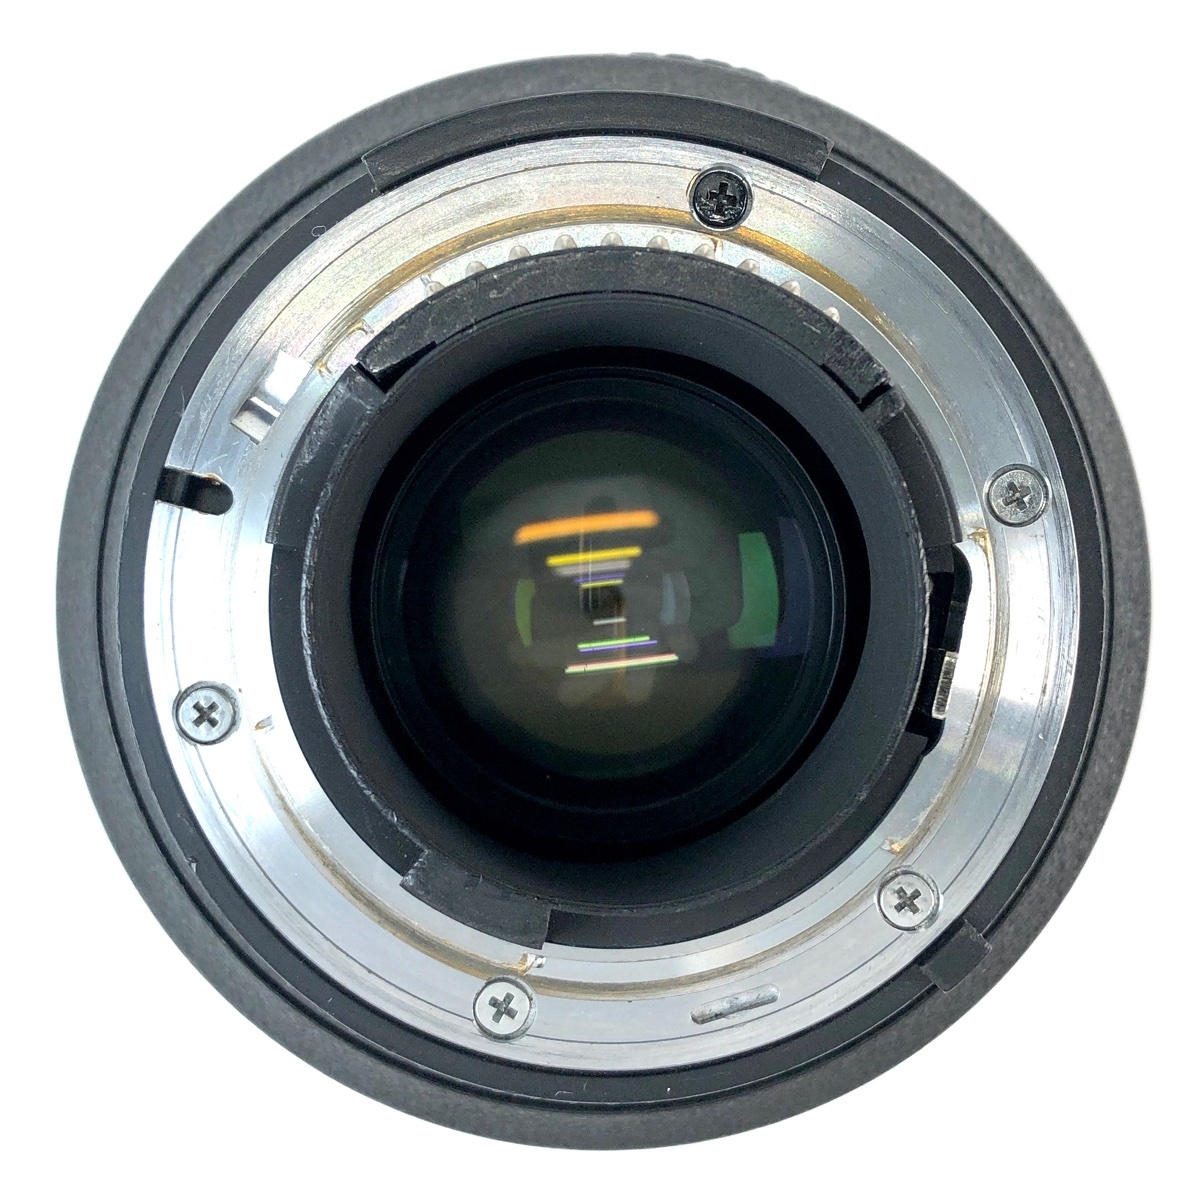 ニコン Nikon F100 + AF-S NIKKOR 28-70mm F2.8D ED ［ジャンク品］ フィルム オートフォーカス 一眼レフカメラ 【中古】_バイセル 31055_7